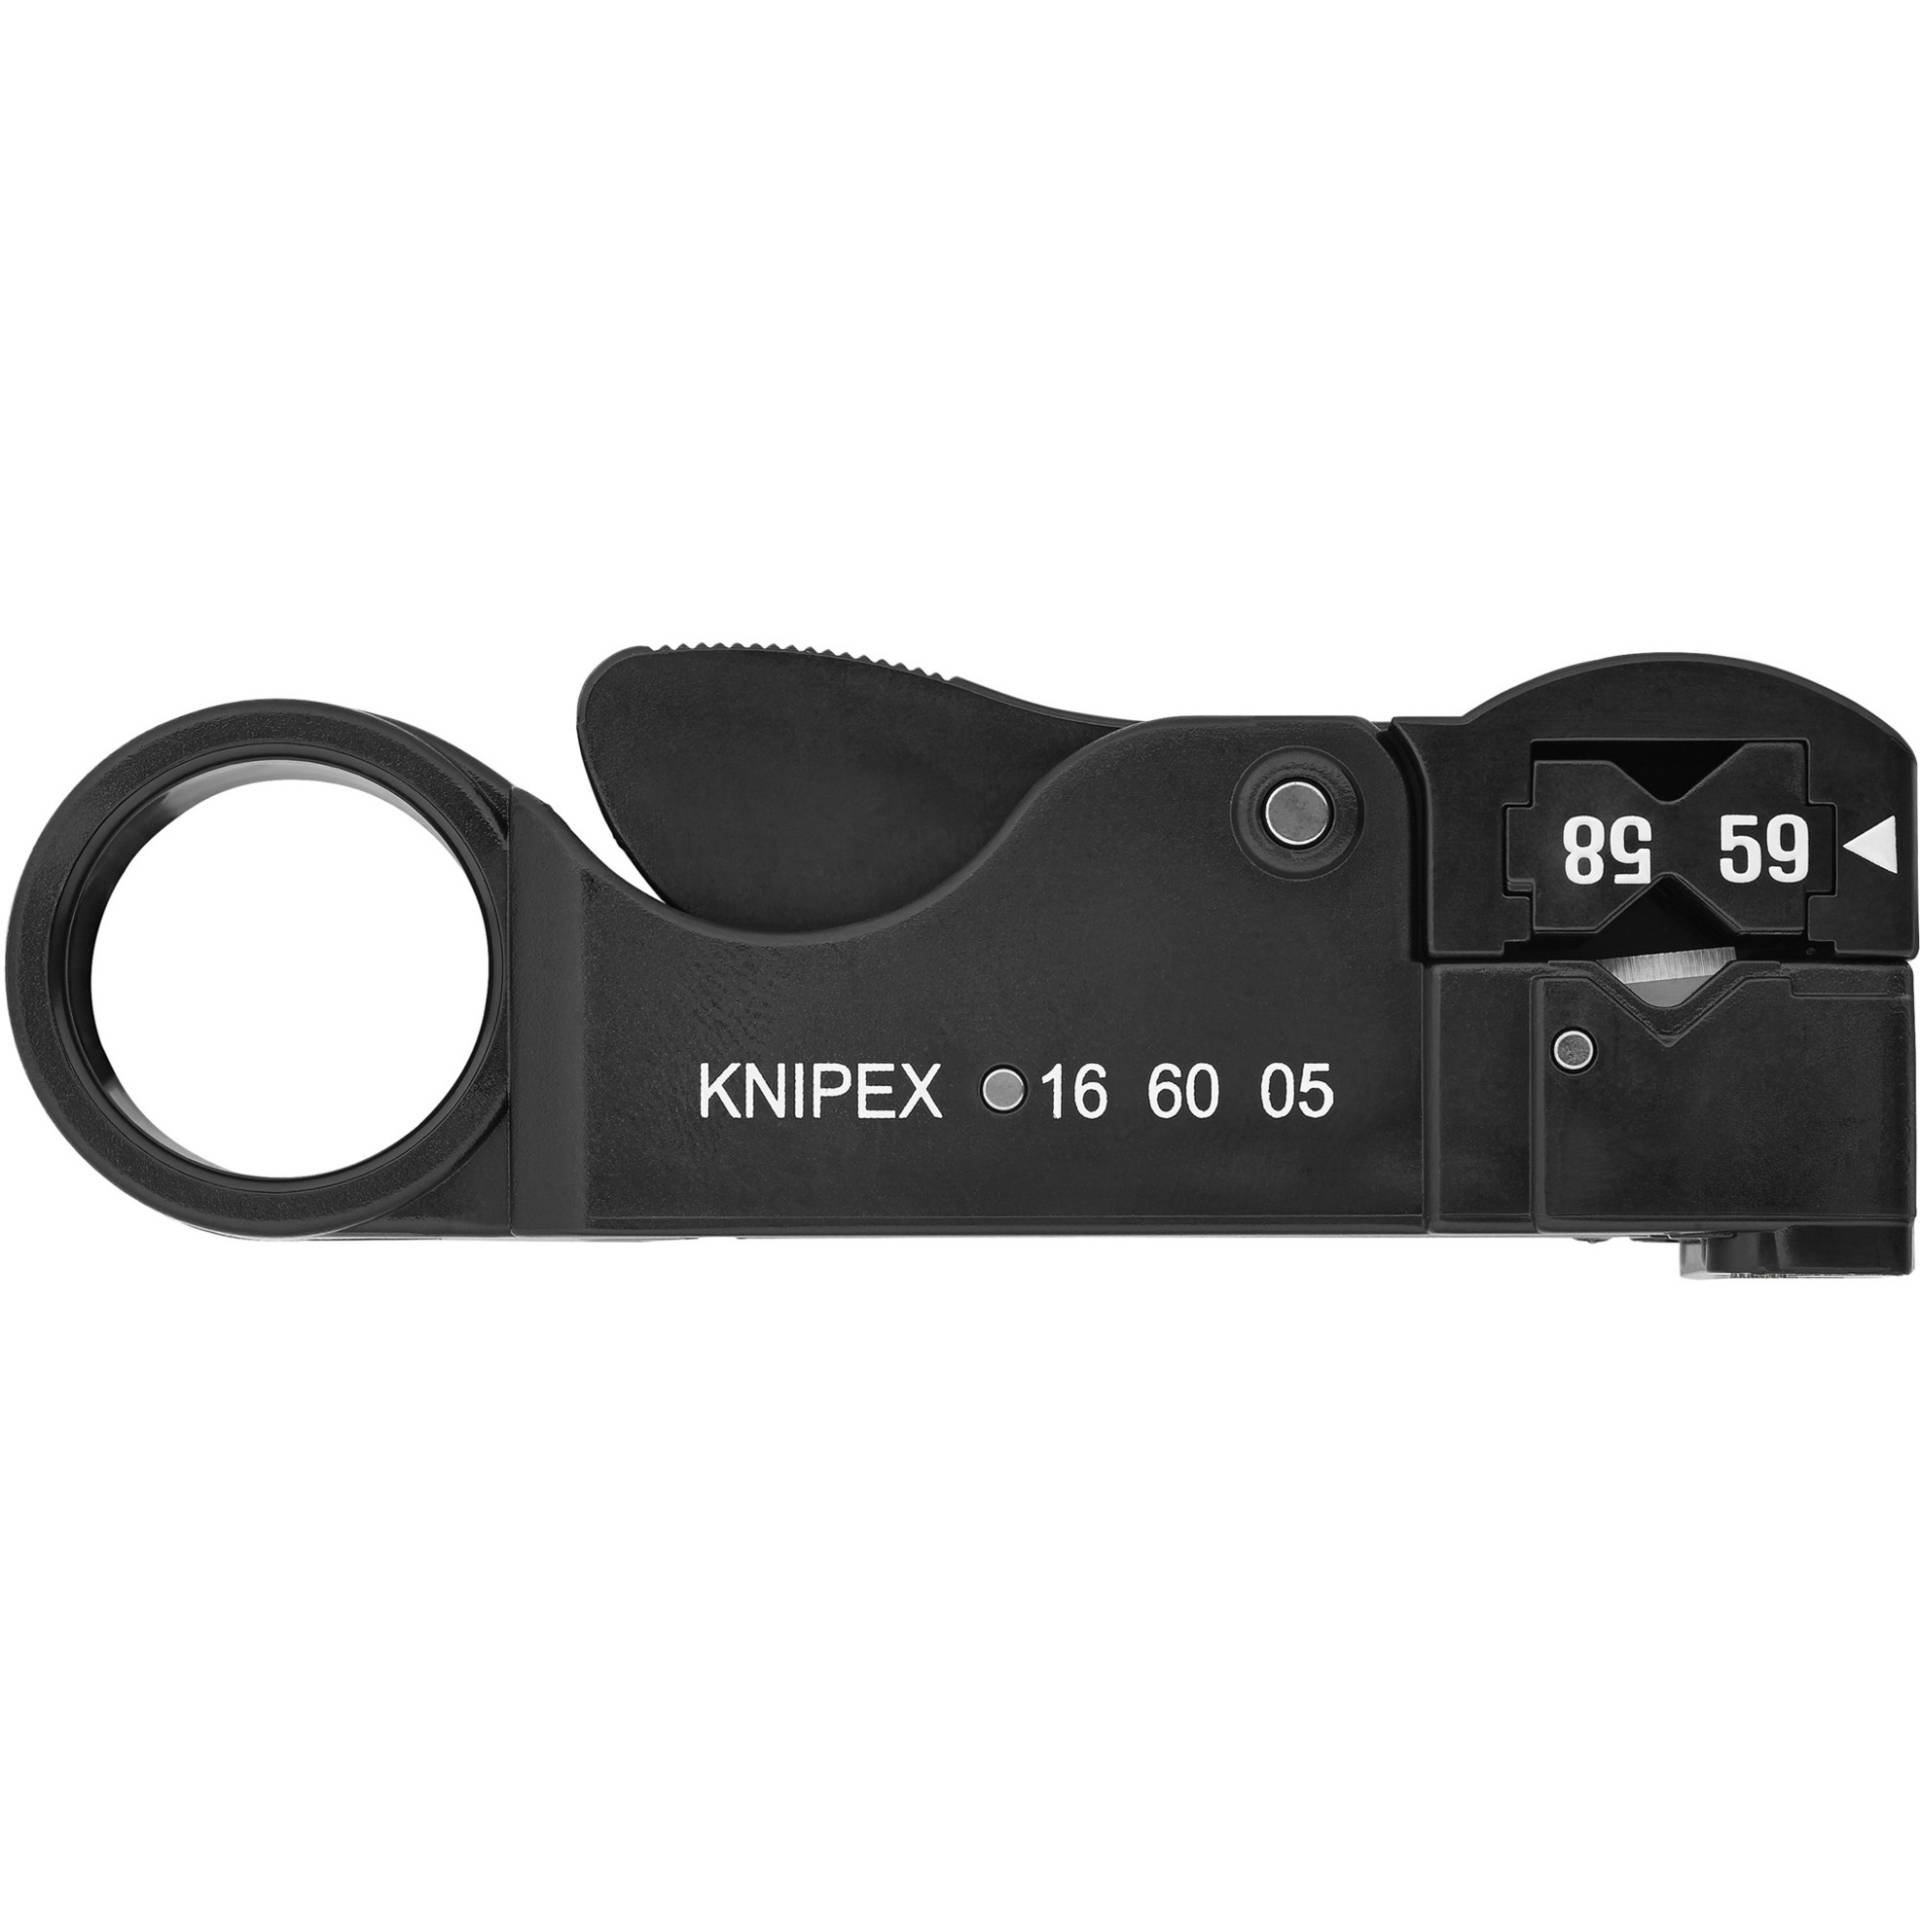 Koax-Abisolierwerkzeug 16 60 05 SB, Abisolier-/ Abmantelungswerkzeug von Knipex